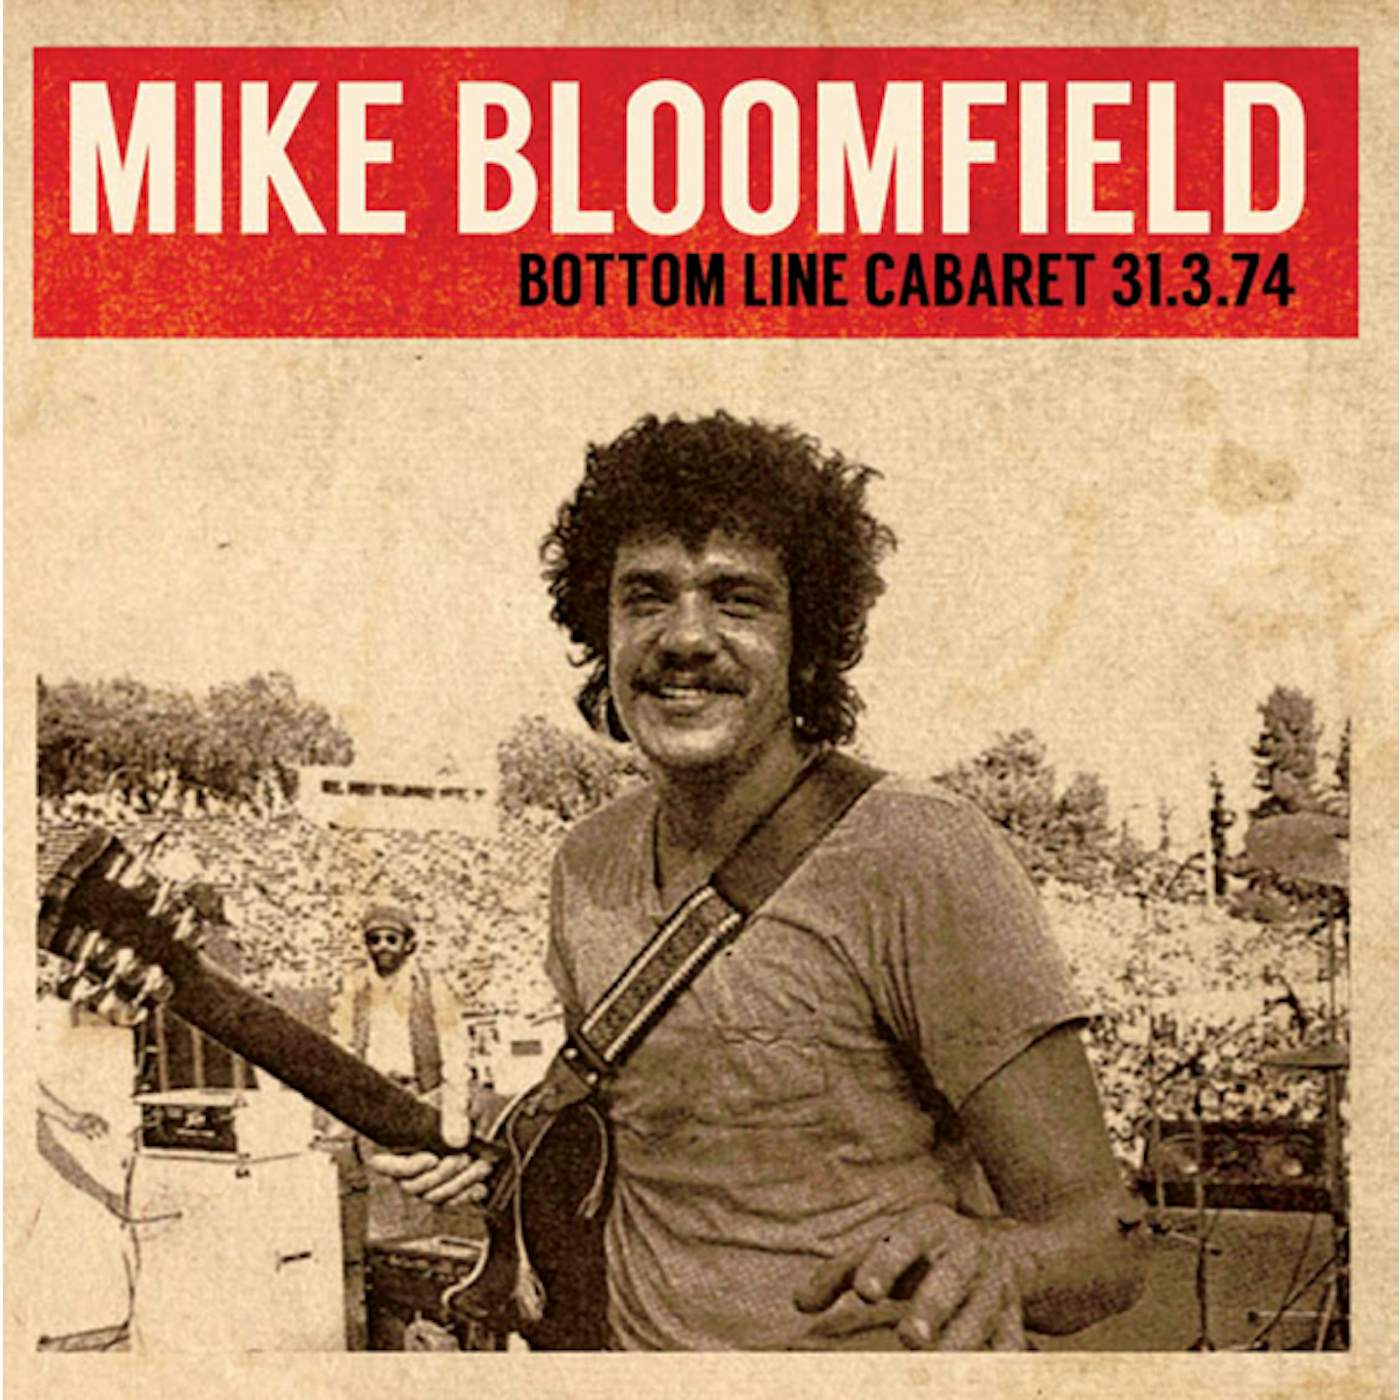 Mike Bloomfield BOTTOM LINE CABARET 31.3.74 CD